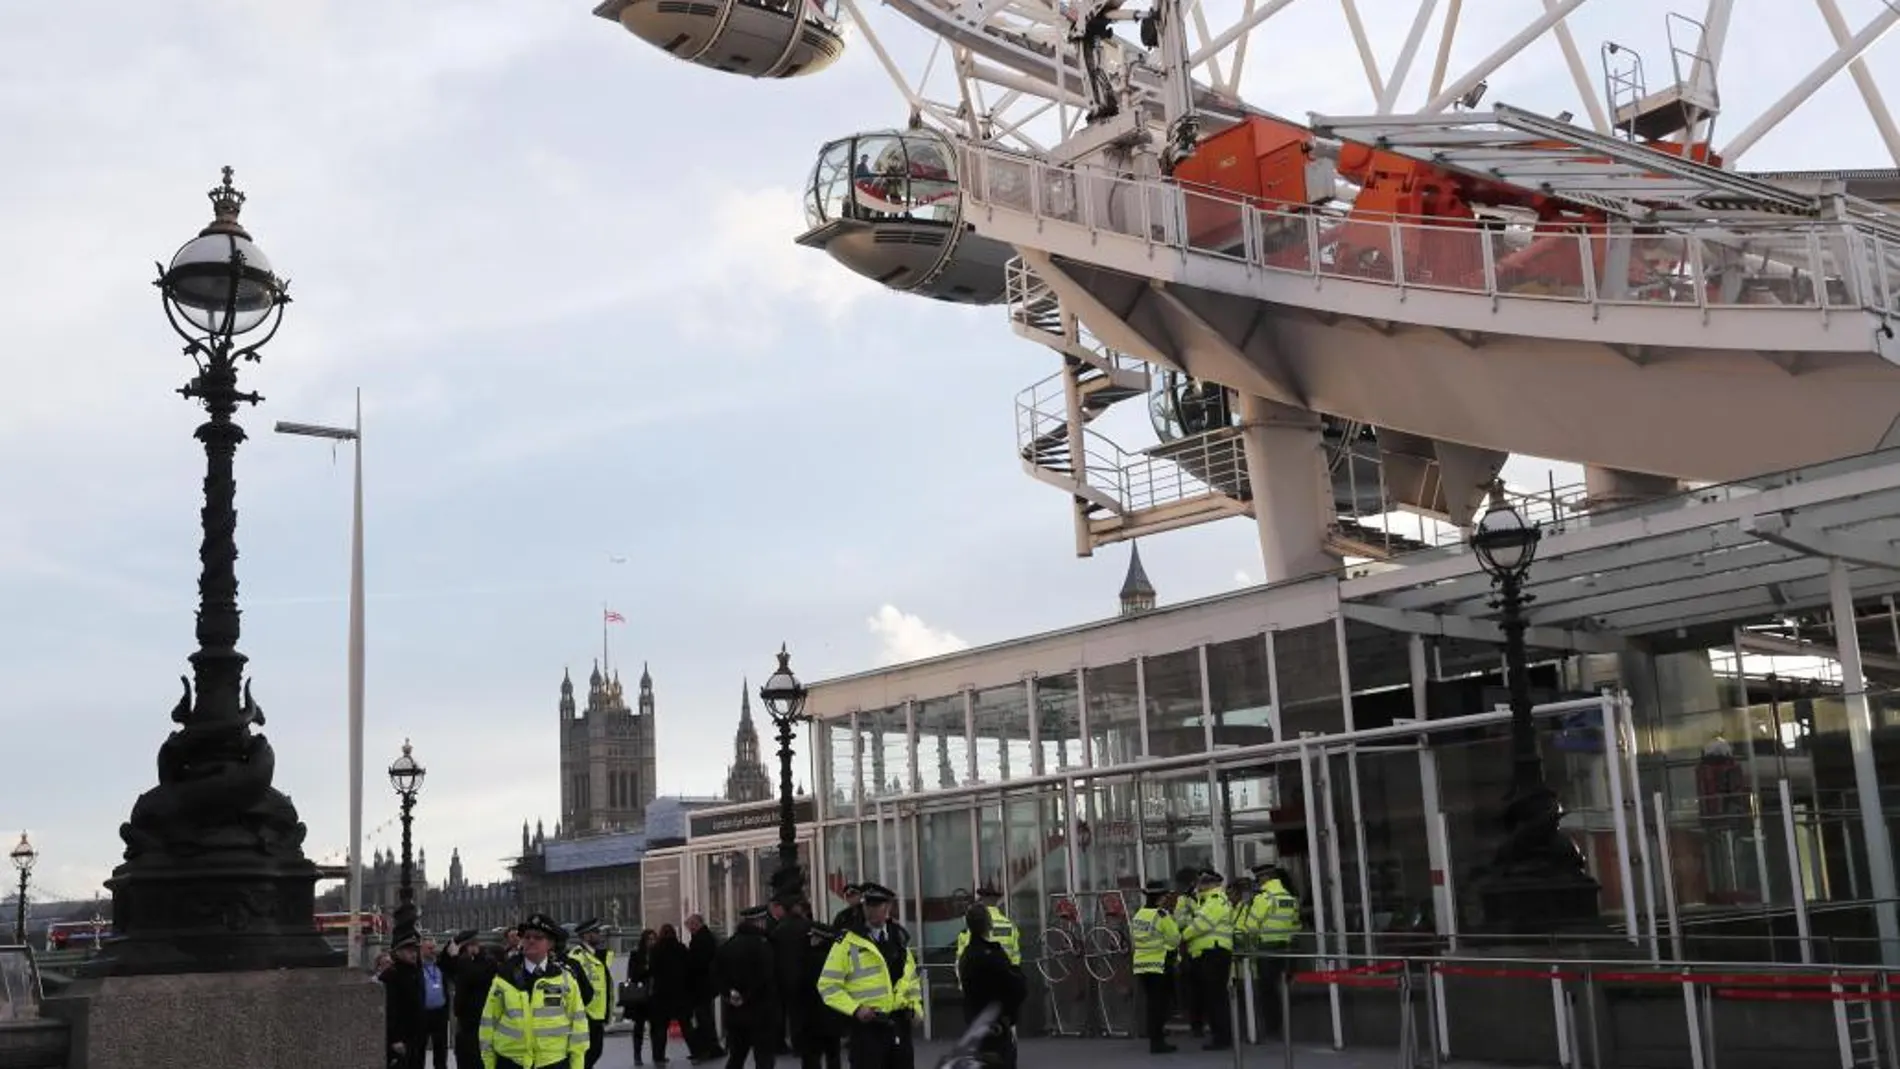 La Policía bloqueó el London Eye por seguridad dejando atrapados a los estudiantes madrileños